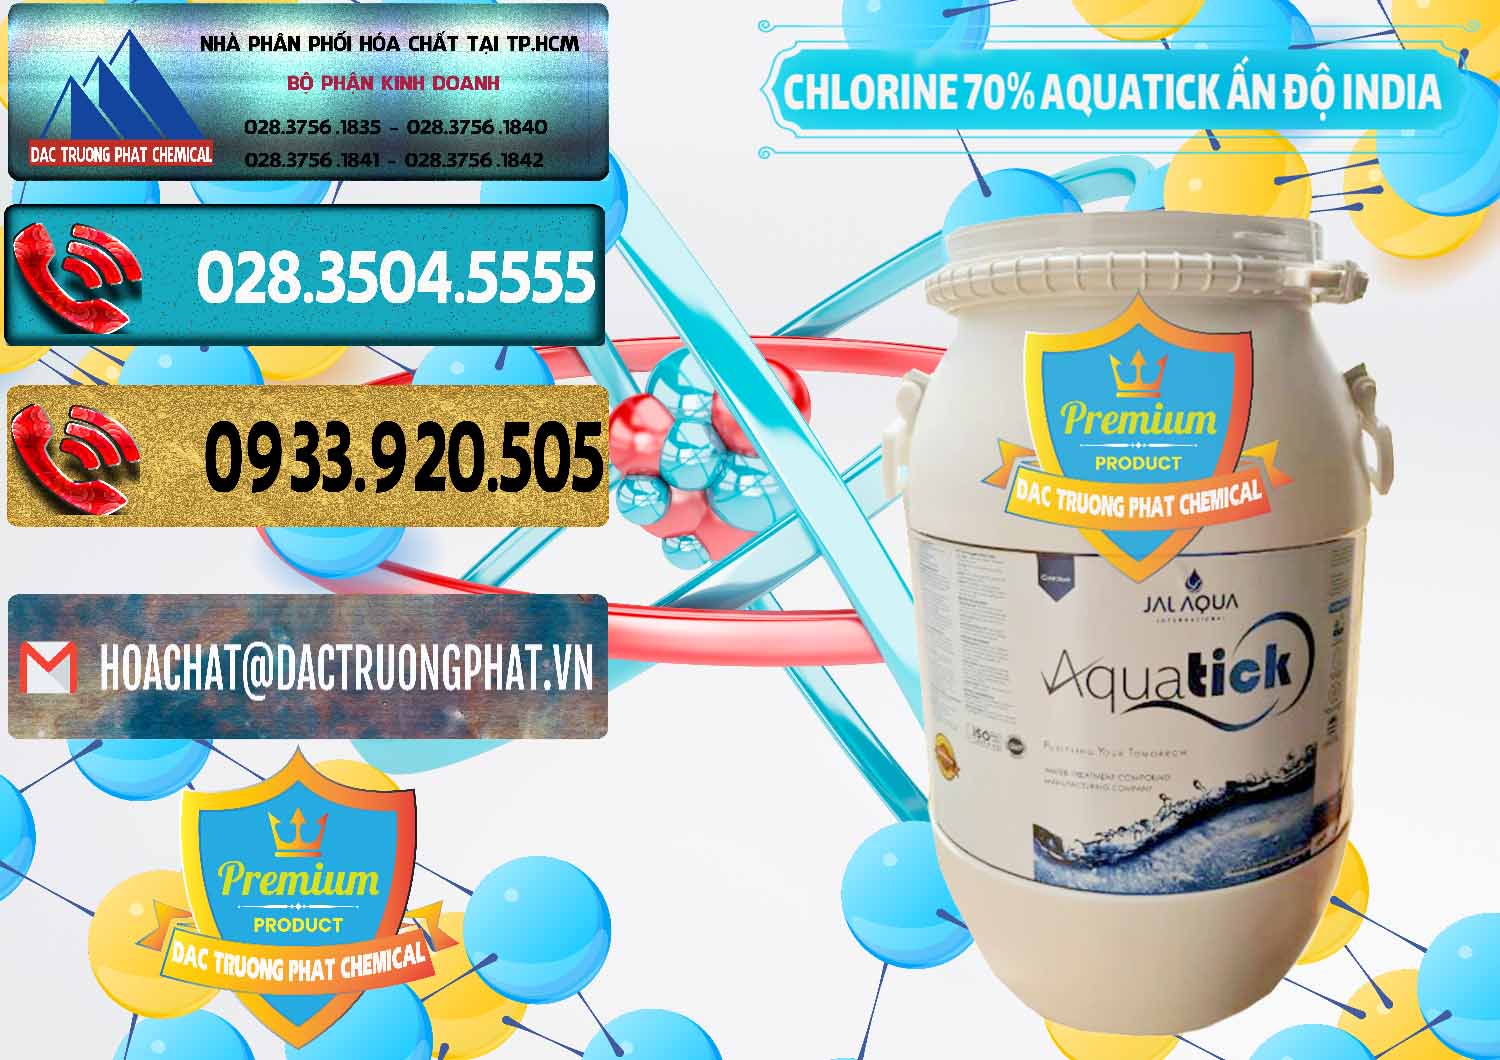 Cung cấp ( bán ) Chlorine – Clorin 70% Aquatick Jal Aqua Ấn Độ India - 0215 - Công ty nhập khẩu và phân phối hóa chất tại TP.HCM - hoachatdetnhuom.com